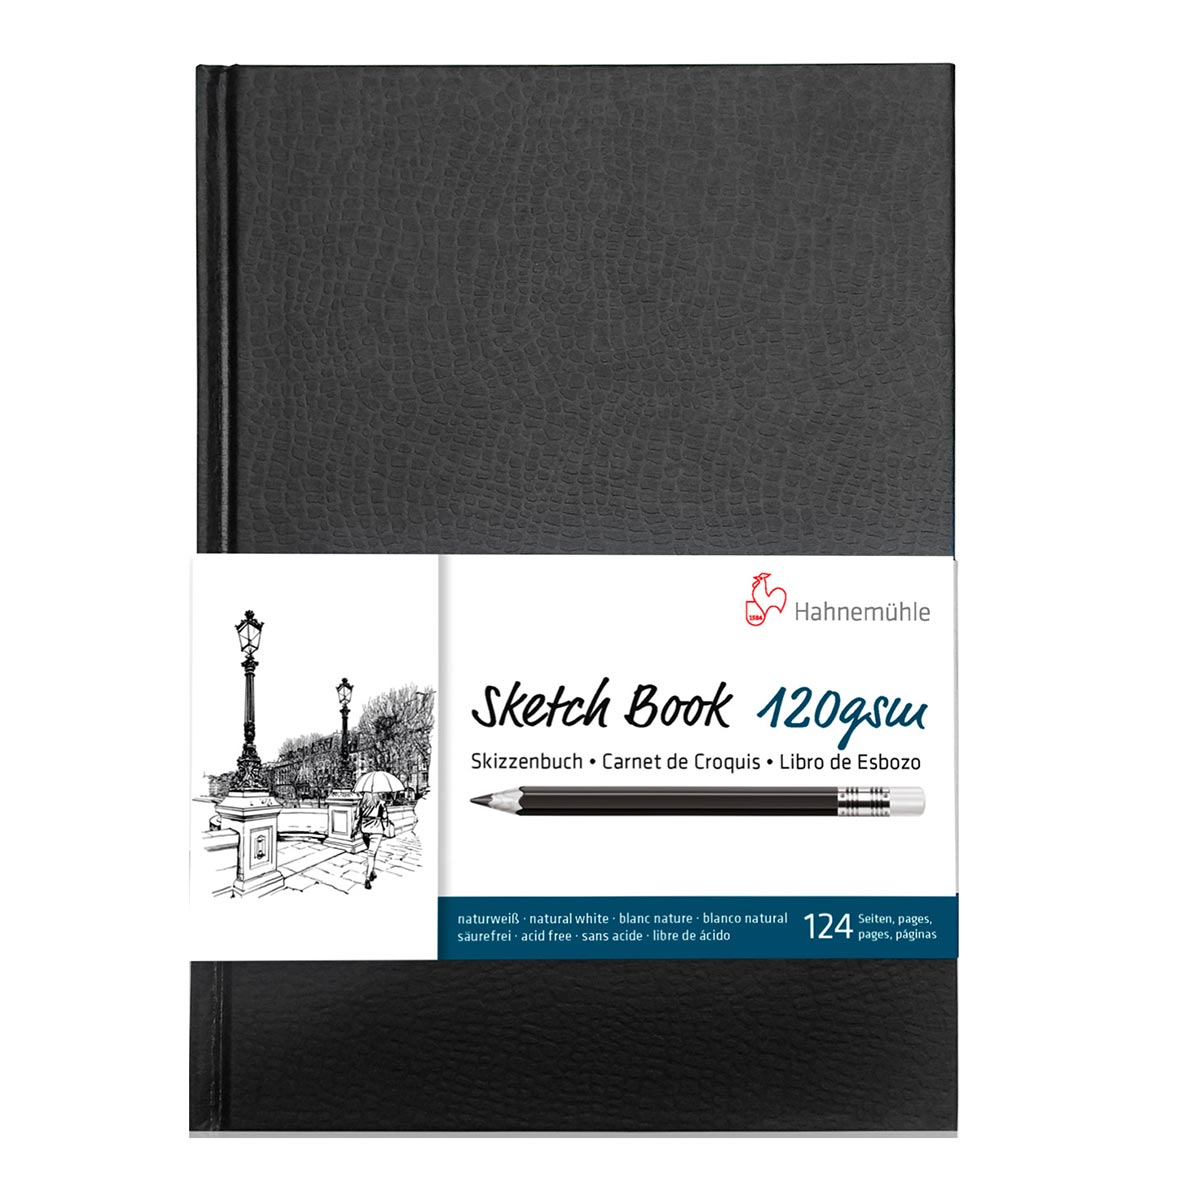 Hahnemuhle - Hardback Sketchbook 120gsm 62 Sheets A5